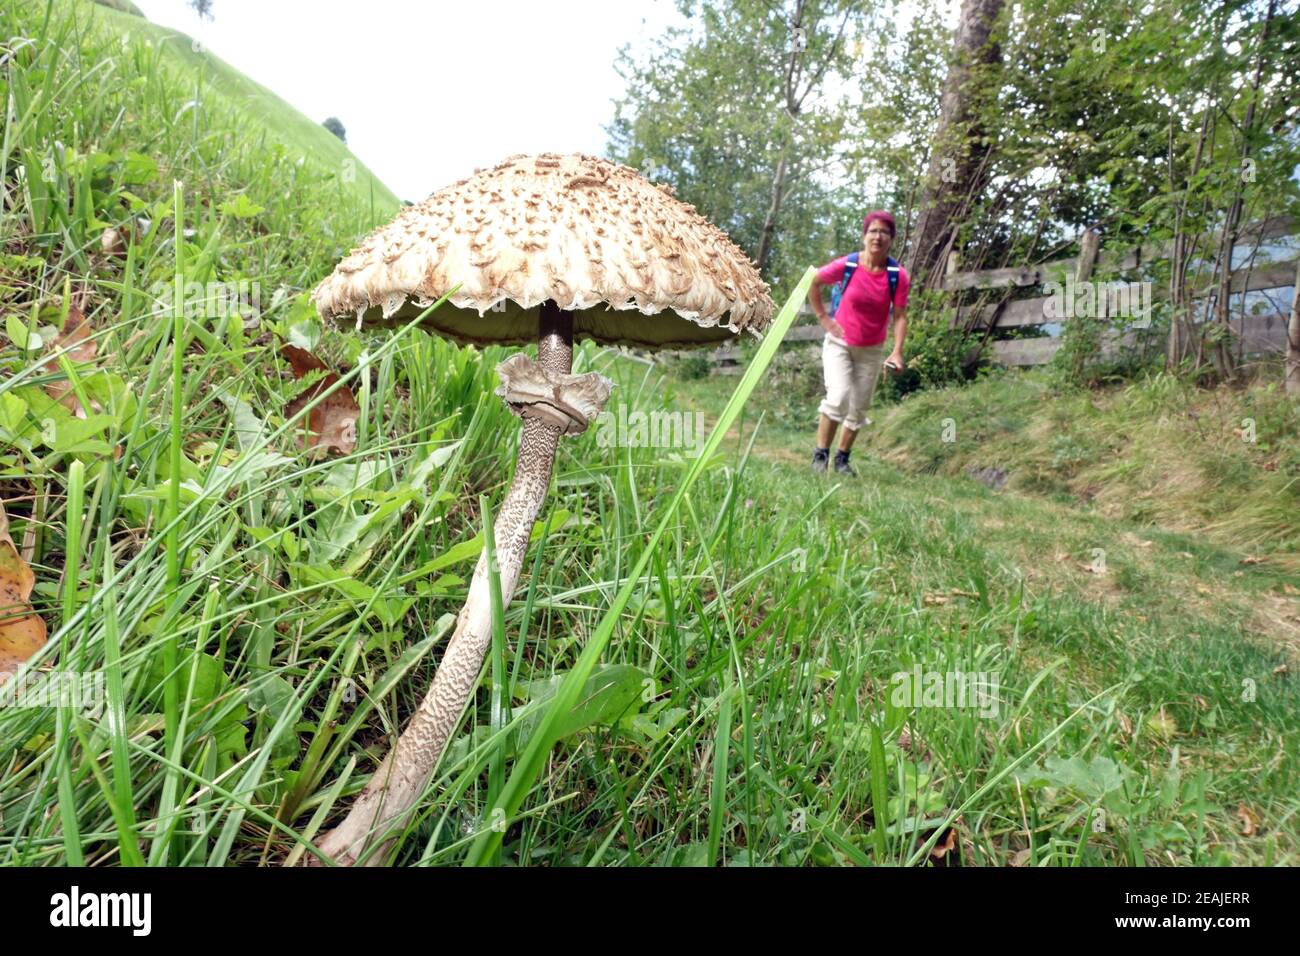 Champignon du parasol (Macrolepiota procera) sur un pré de montagne, en arrière-plan une femelle randonneur Banque D'Images